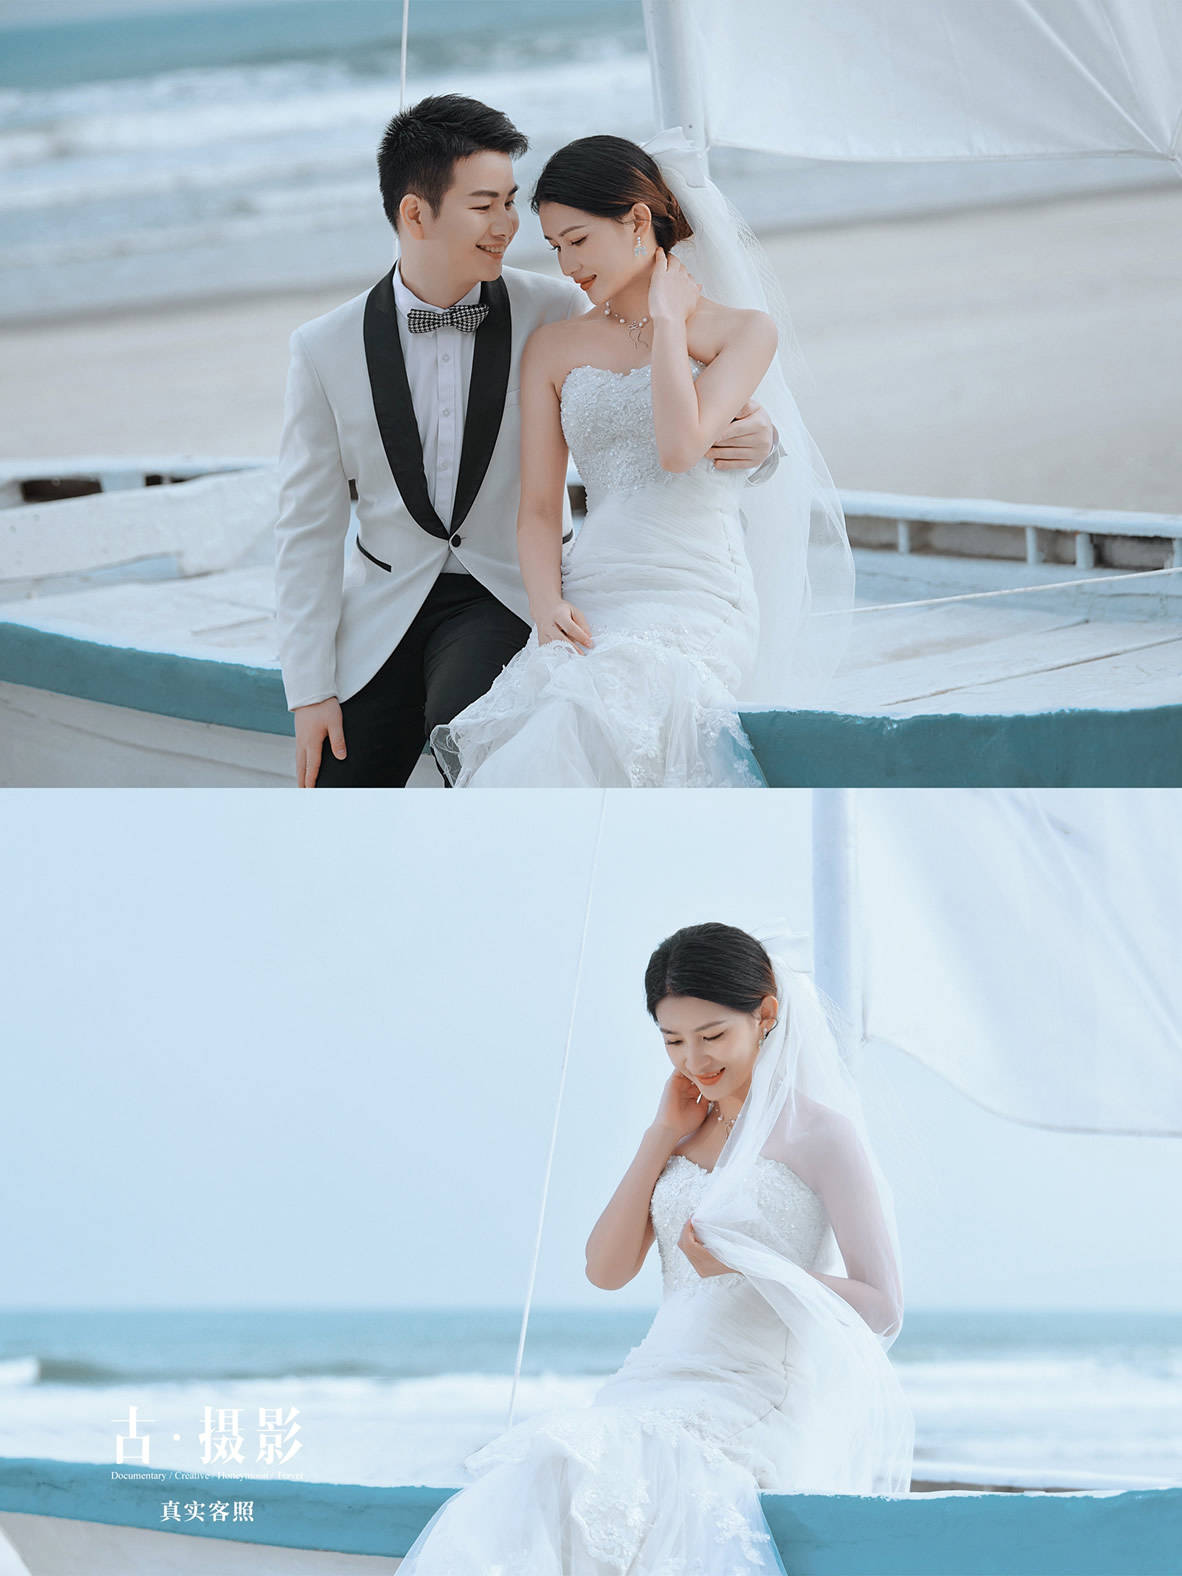 惠先生 陈小姐 - 每日客照 - 古摄影婚纱艺术-古摄影成都婚纱摄影艺术摄影网